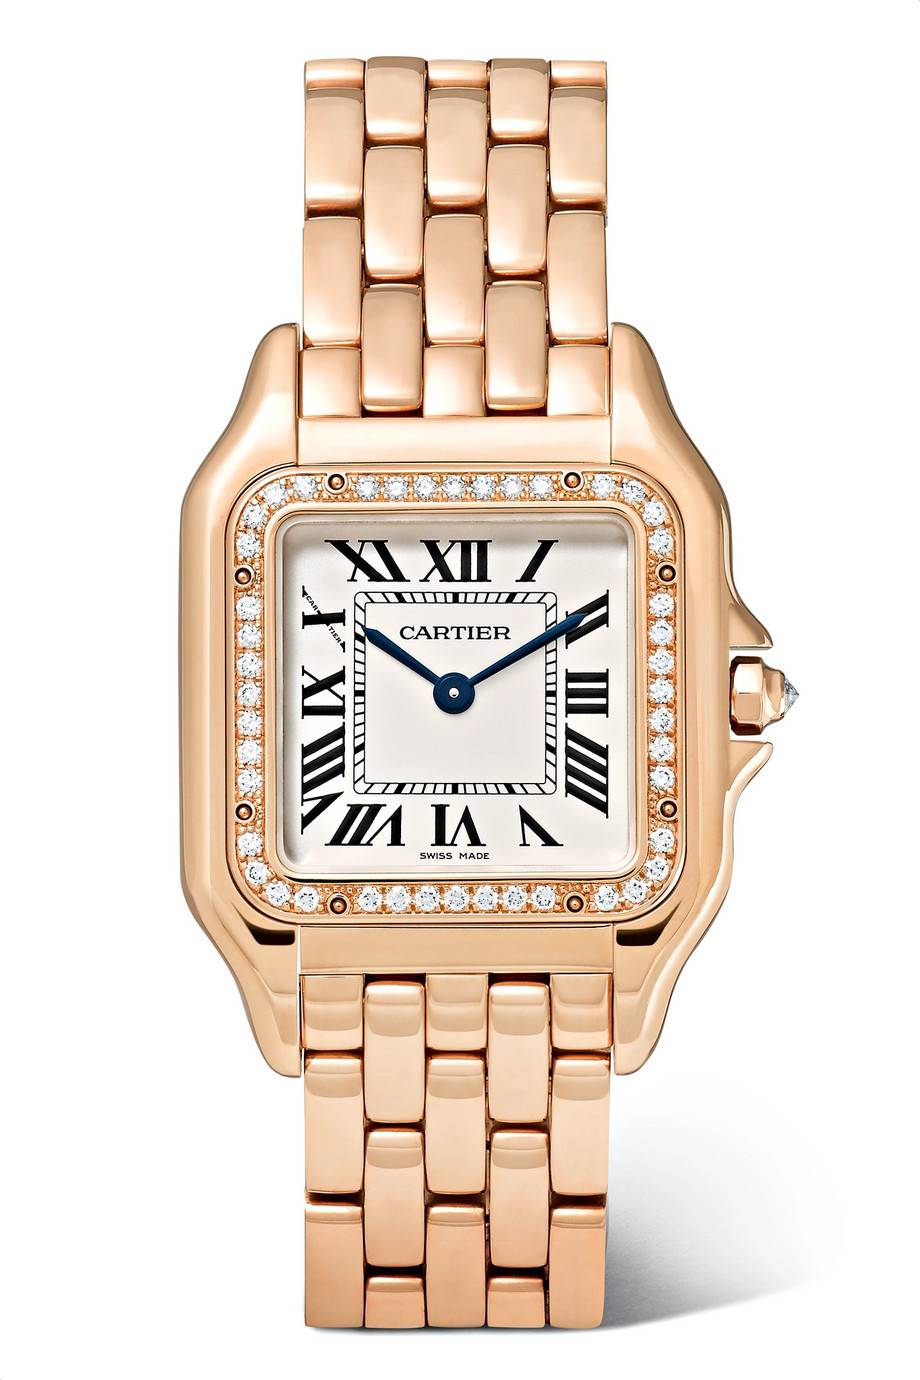 Zegarek Cartier, ok. 150 tys. zł (Fot. materiały prasowe)